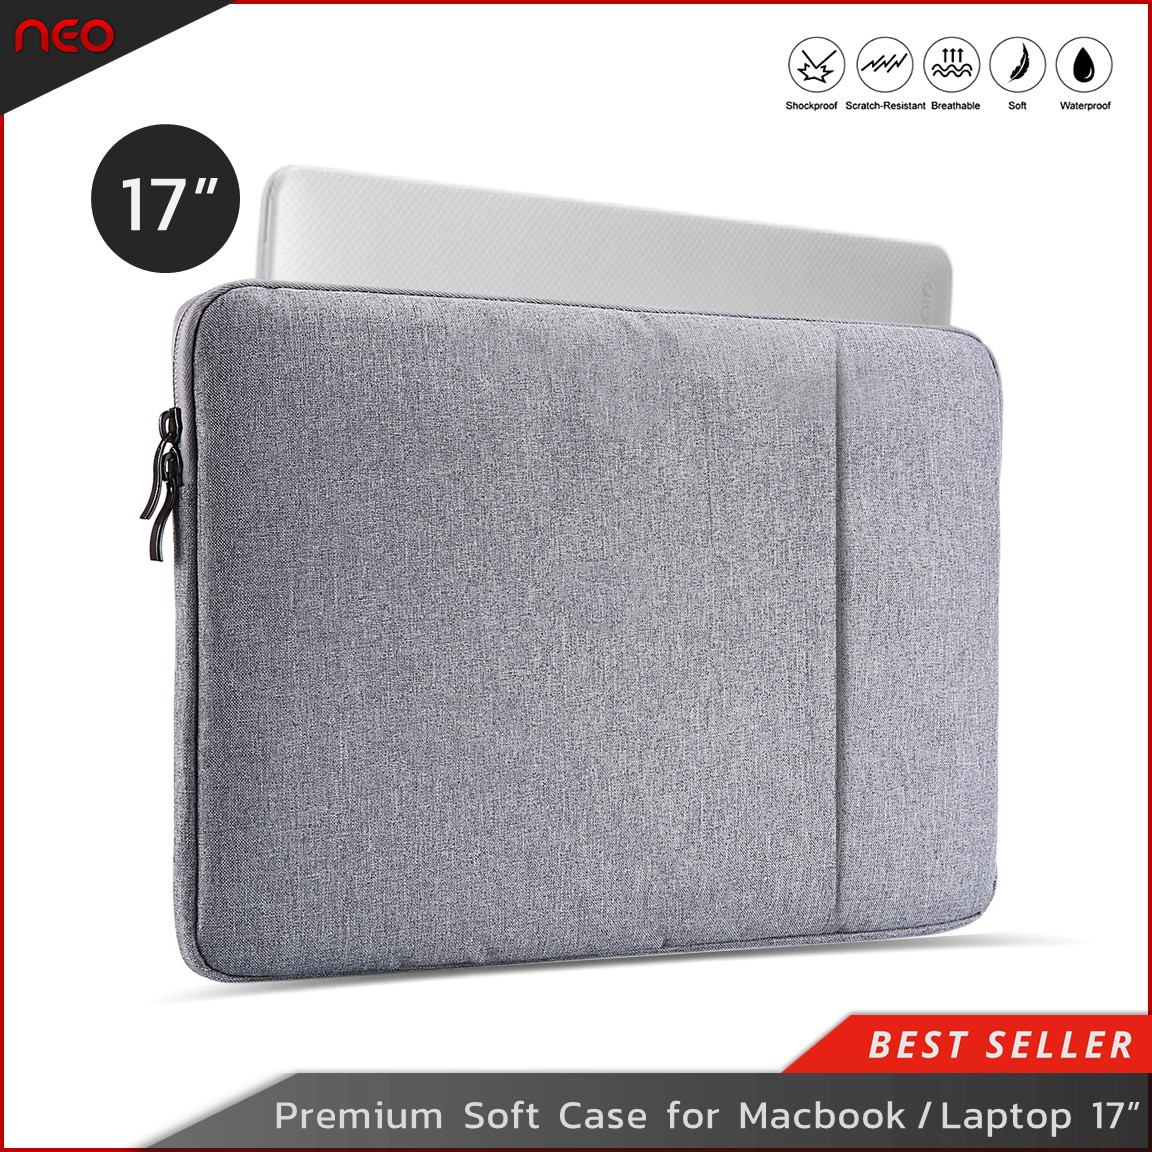 NEO กระเป๋าโน๊ตบุ๊ค Soft Case ซองแล็ปท็อป ขนาด17-17.3 นิ้ว เคสโน้ตบุ๊ค เคสMacbook Pro ซองใส่โน๊ตบุ๊ค กันฝุ่น กันรอย กันกระแทก Laptop Bag Macbook Sleeve Case 17-17.3 inch